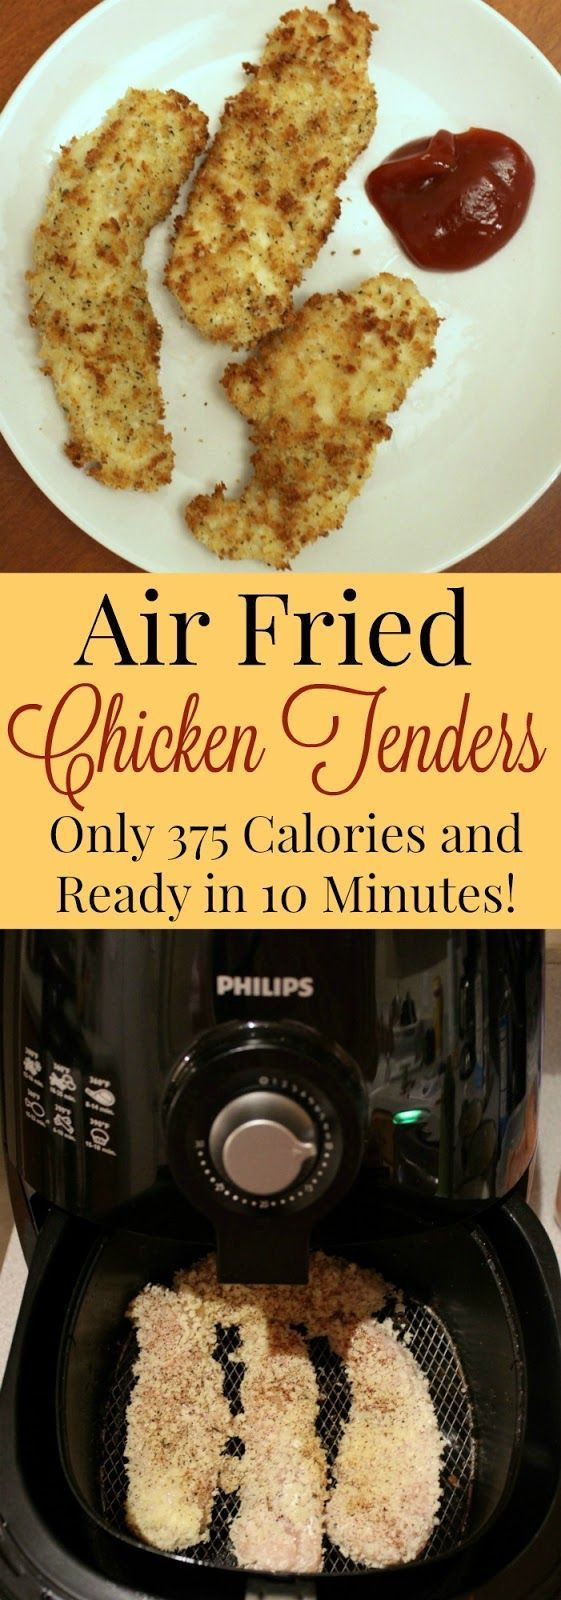 Nuwave Air Fryer Chicken Tenders
 Healthy Air Fried Chicken Tenders Recipe